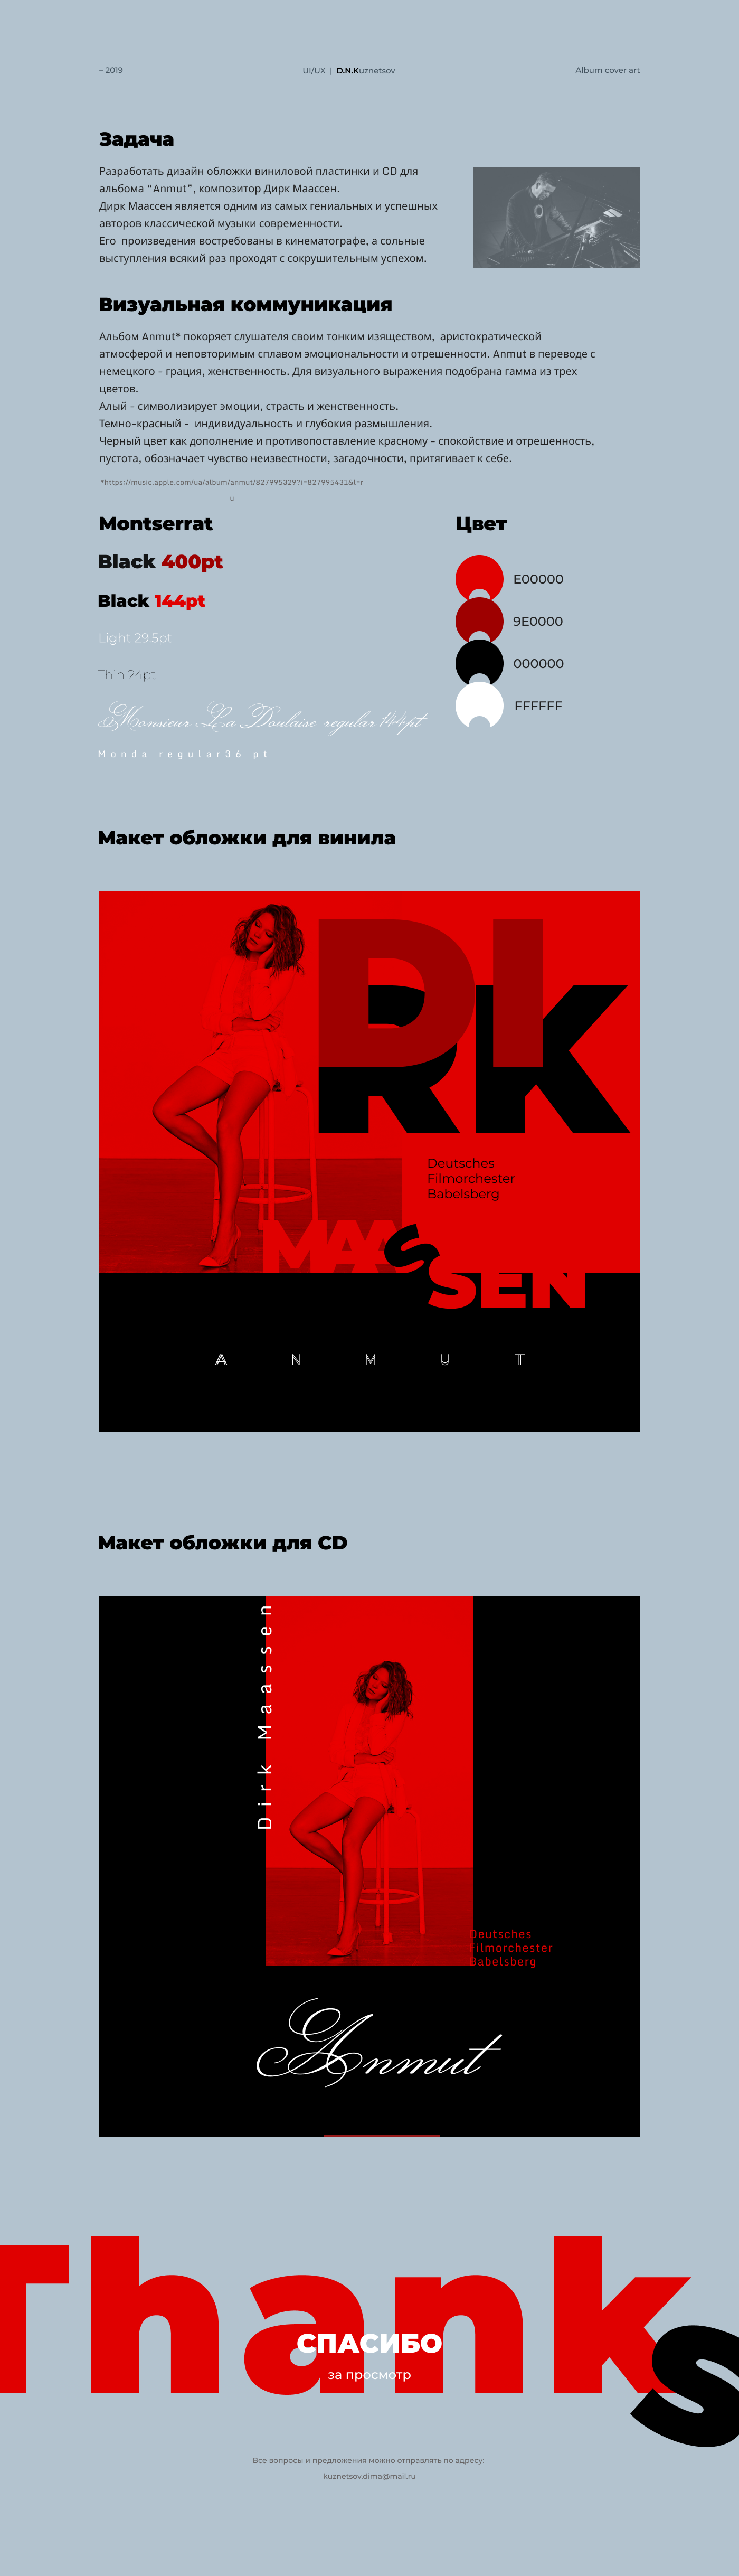 dirk maassen Album cover art vinyl music Classic graphic design